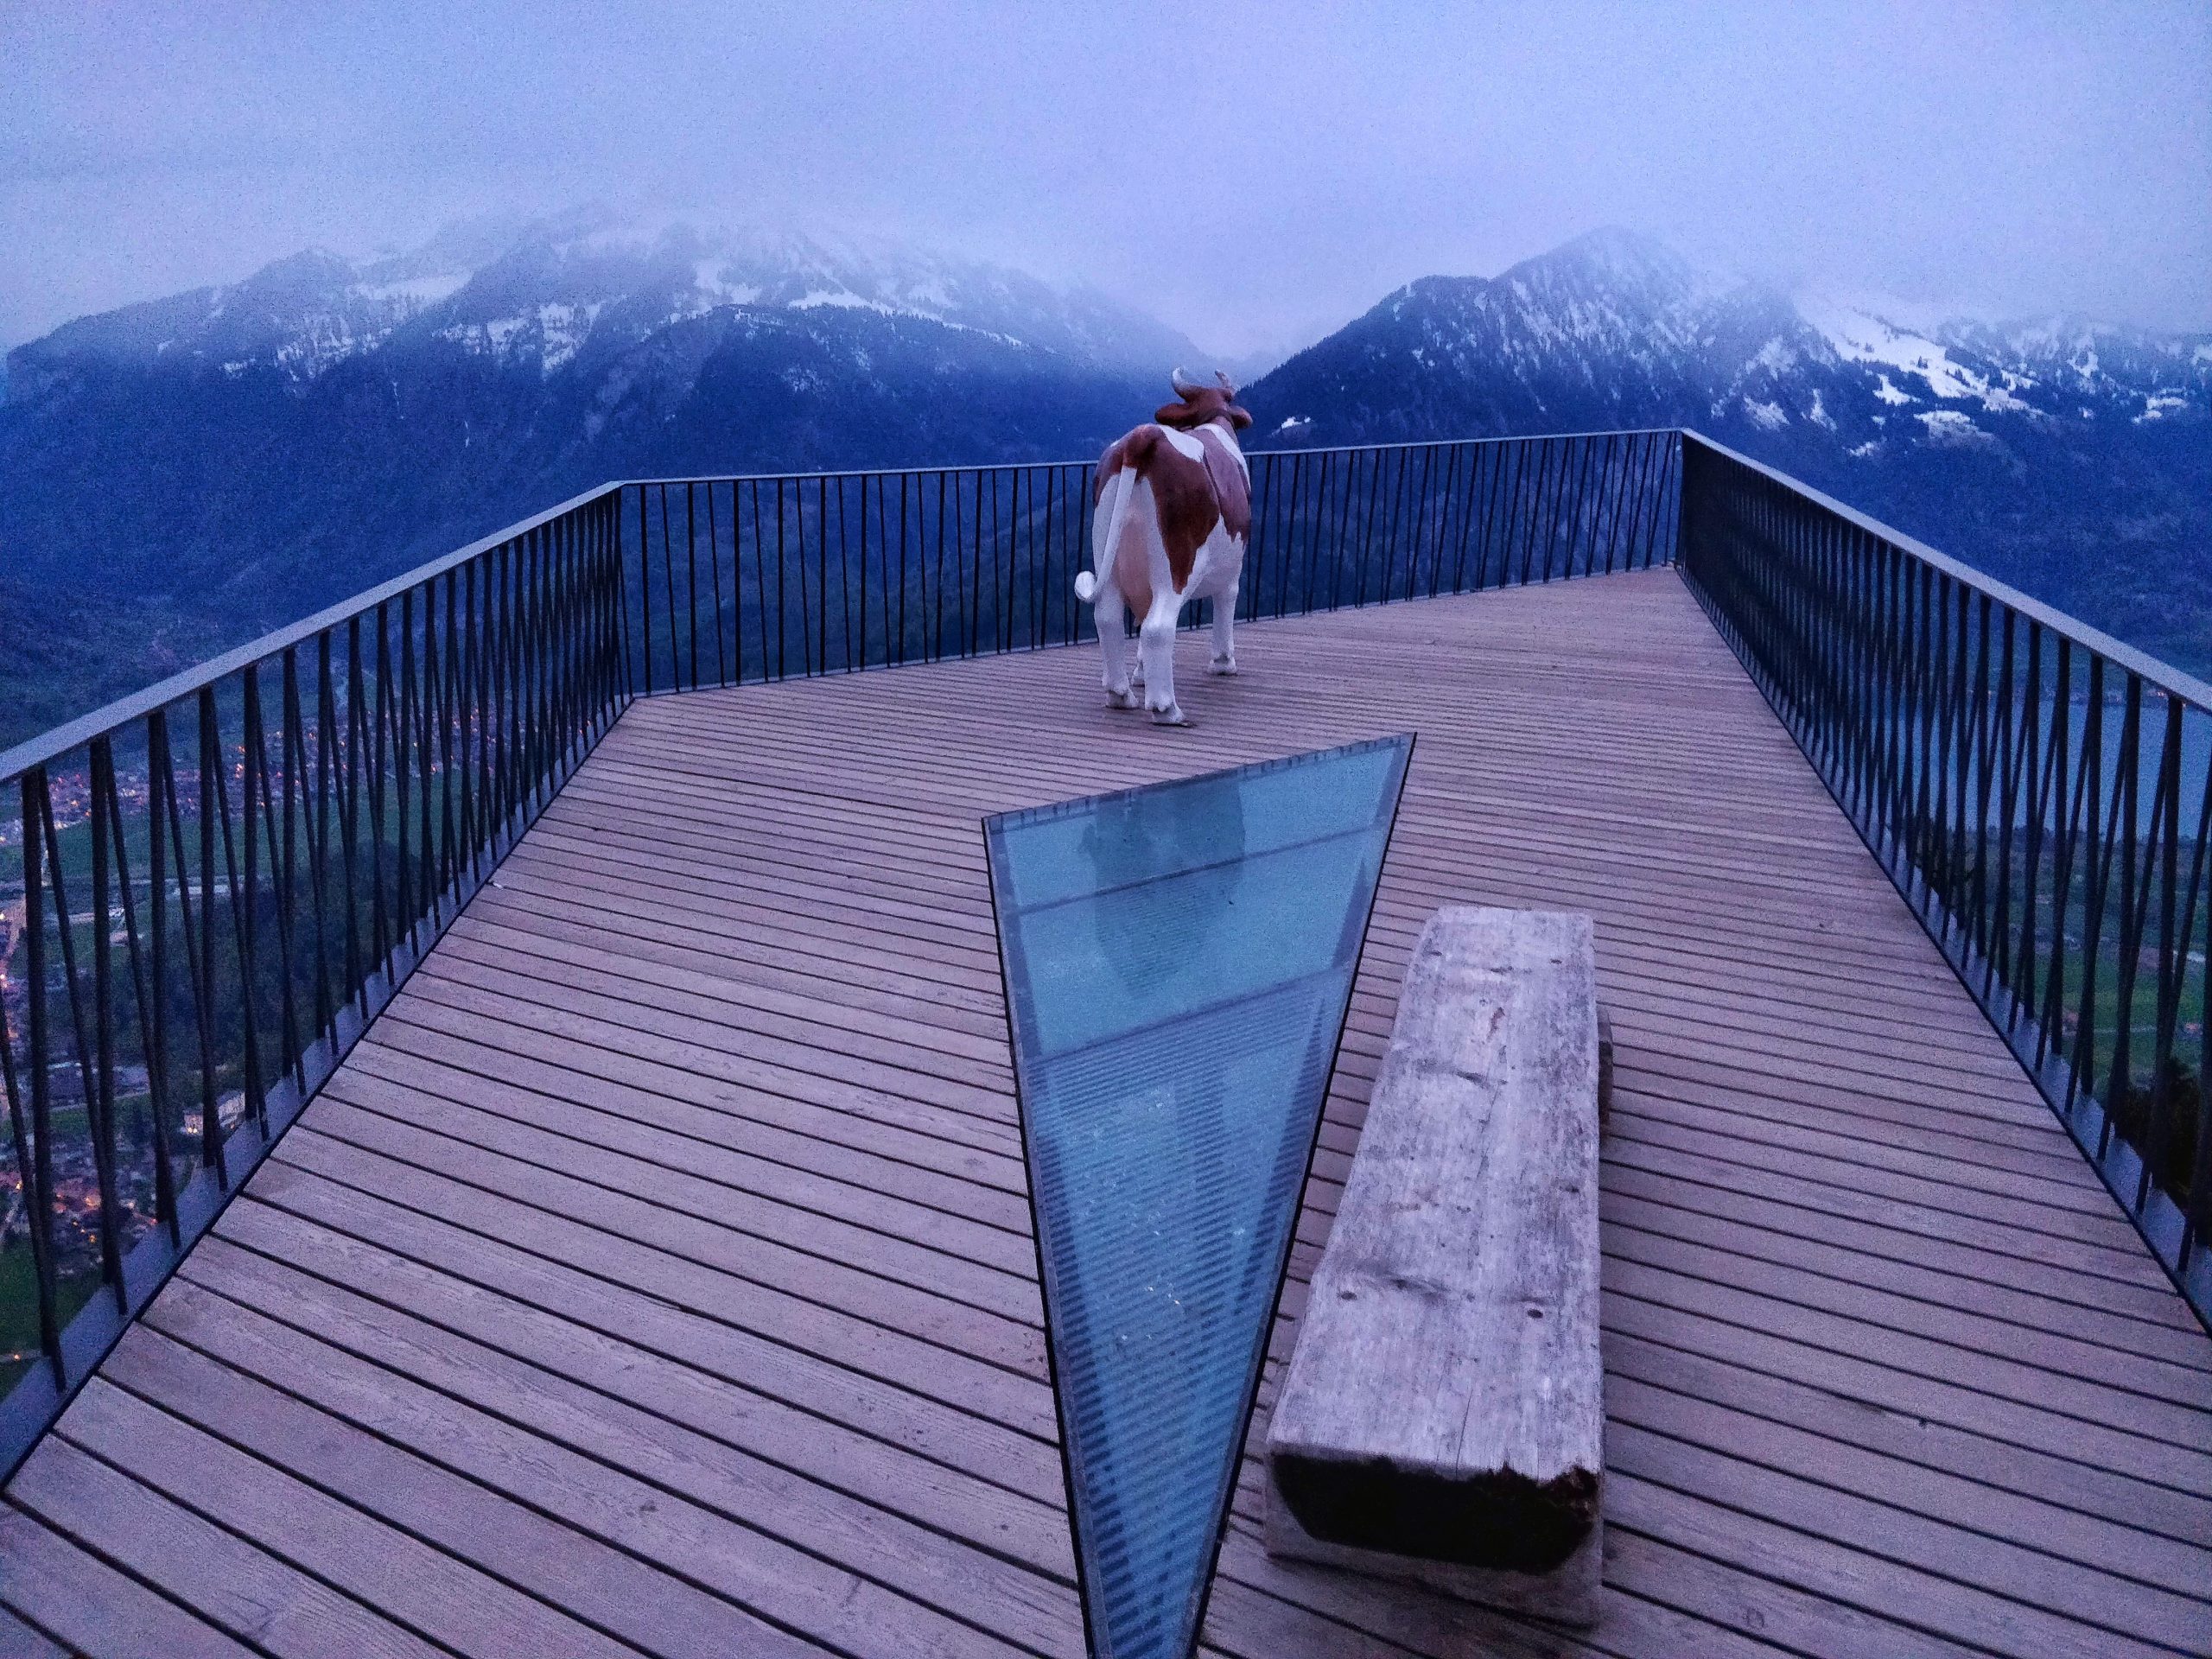 Interlaken – Two Lakes Bridge at Harder Kulm